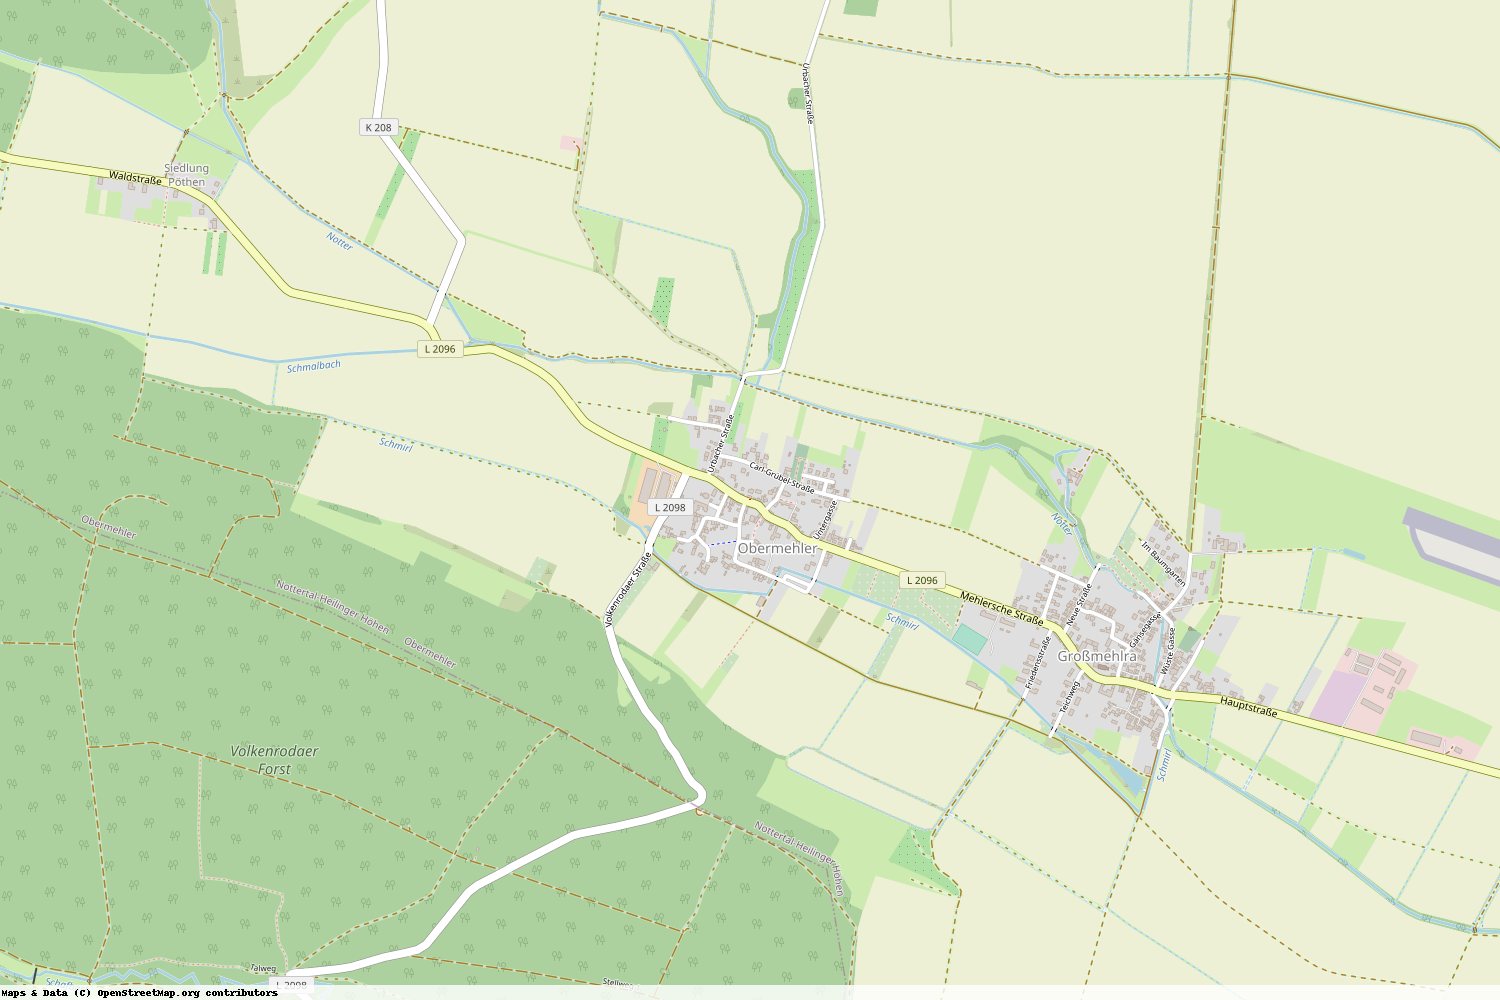 Ist gerade Stromausfall in Thüringen - Unstrut-Hainich-Kreis - Obermehler?